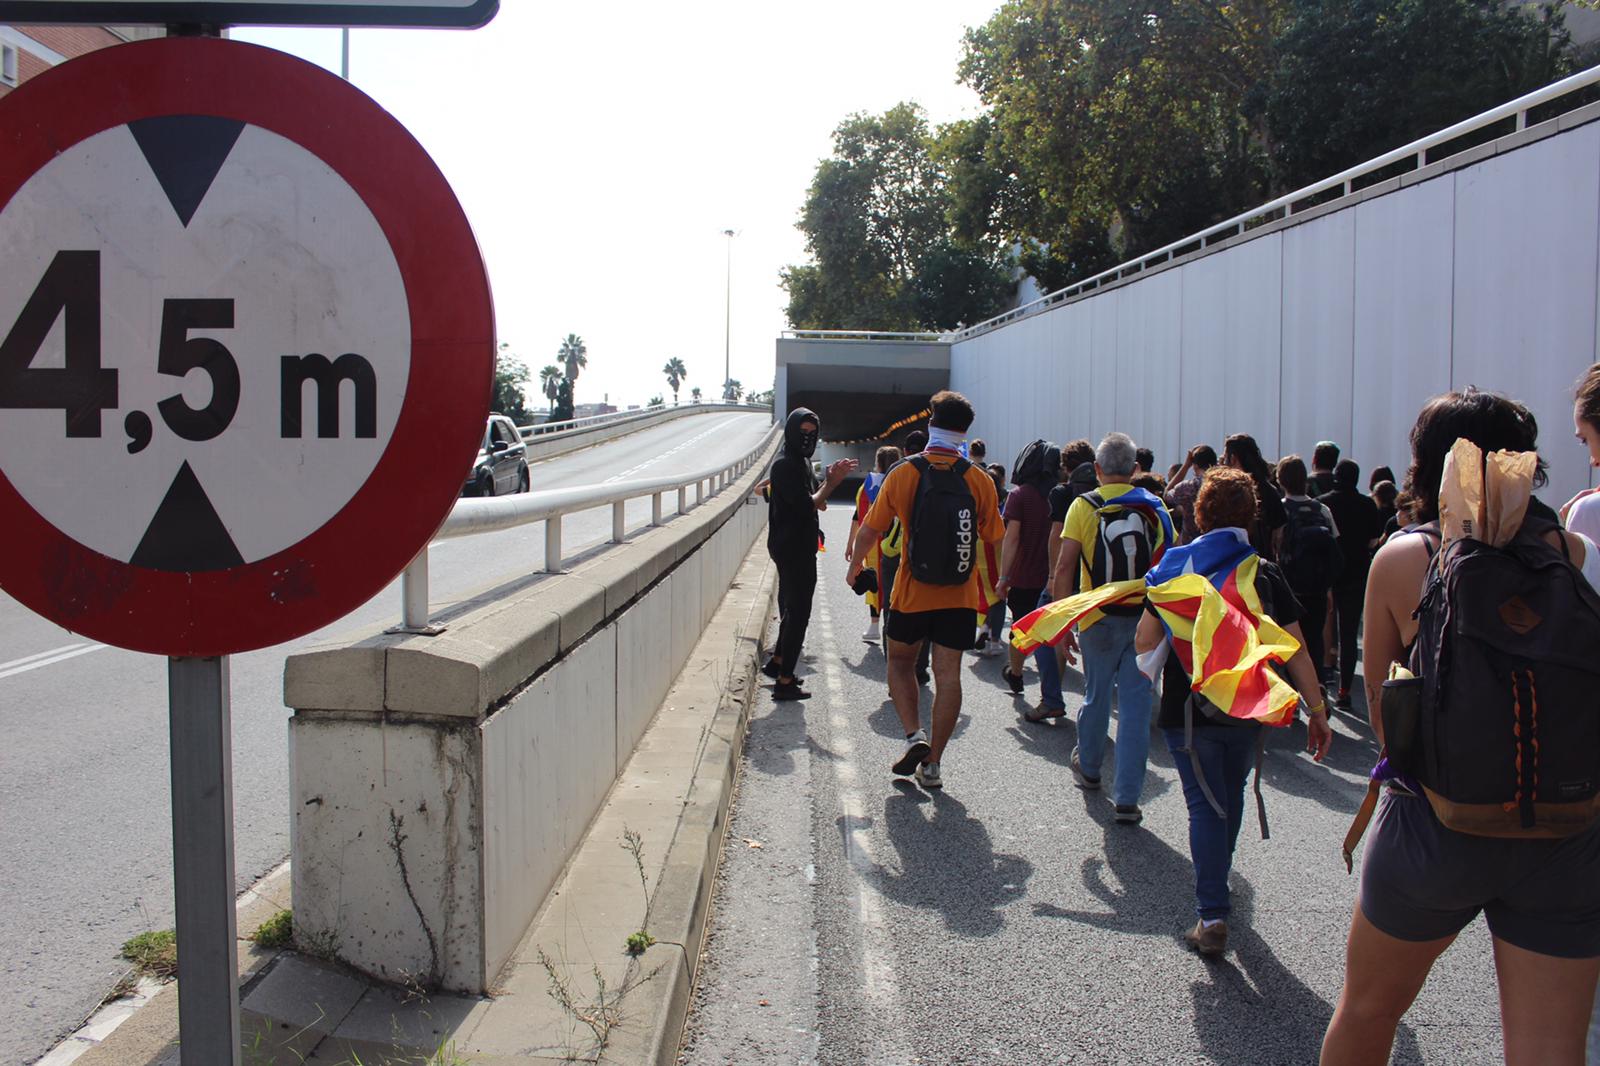 Caos circulatorio en Barcelona: la protesta bloquea los principales accesos y calles